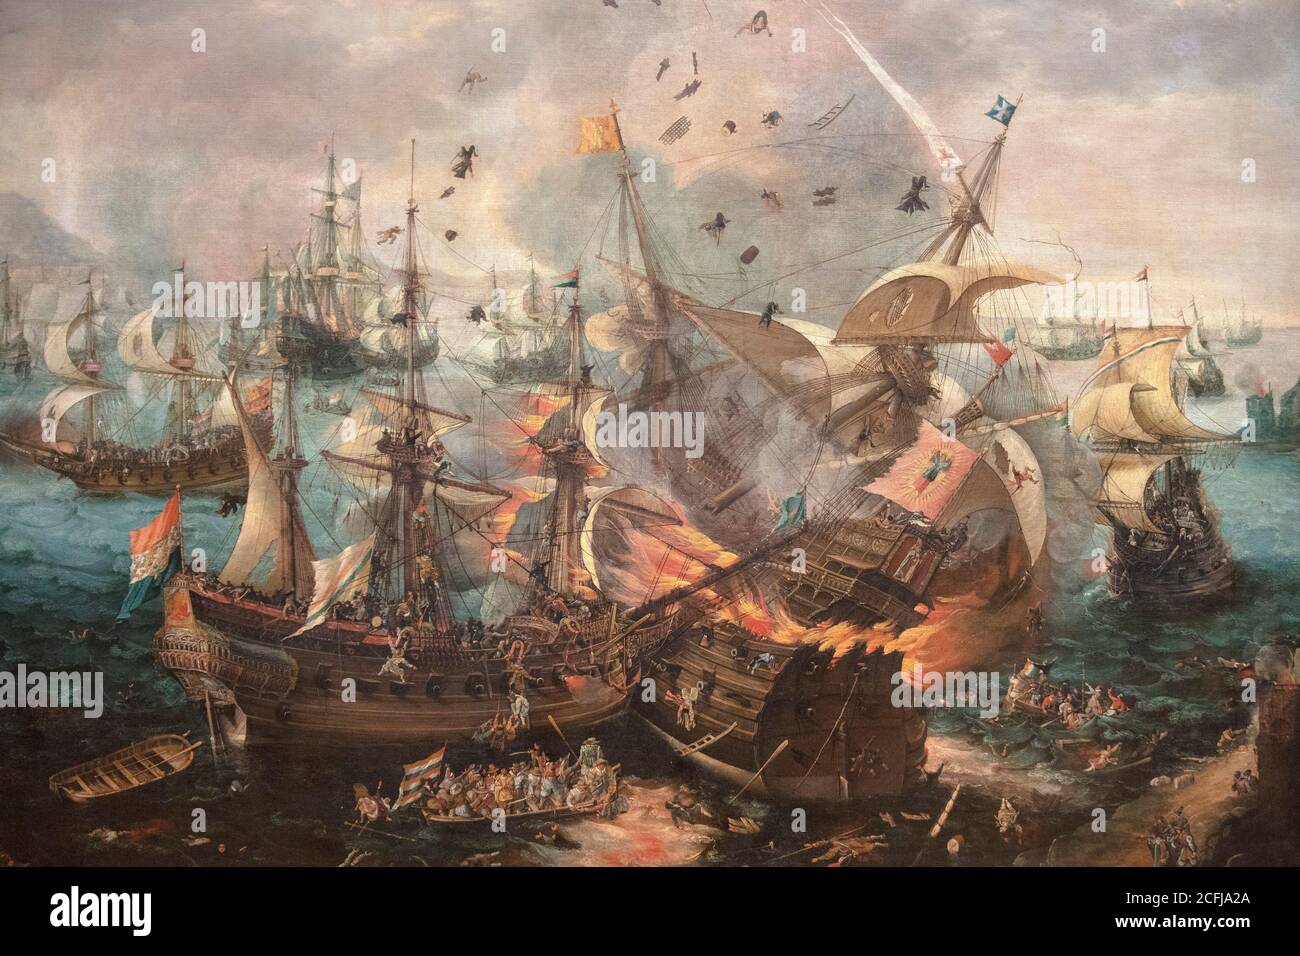 Niederlande, Amsterdam, Rijksmuseum. Die Explosion des spanischen Flaggschiffs während der Schlacht von Gibraltar. Cornelis Claesz van Wieringen. c. 1621. Stockfoto